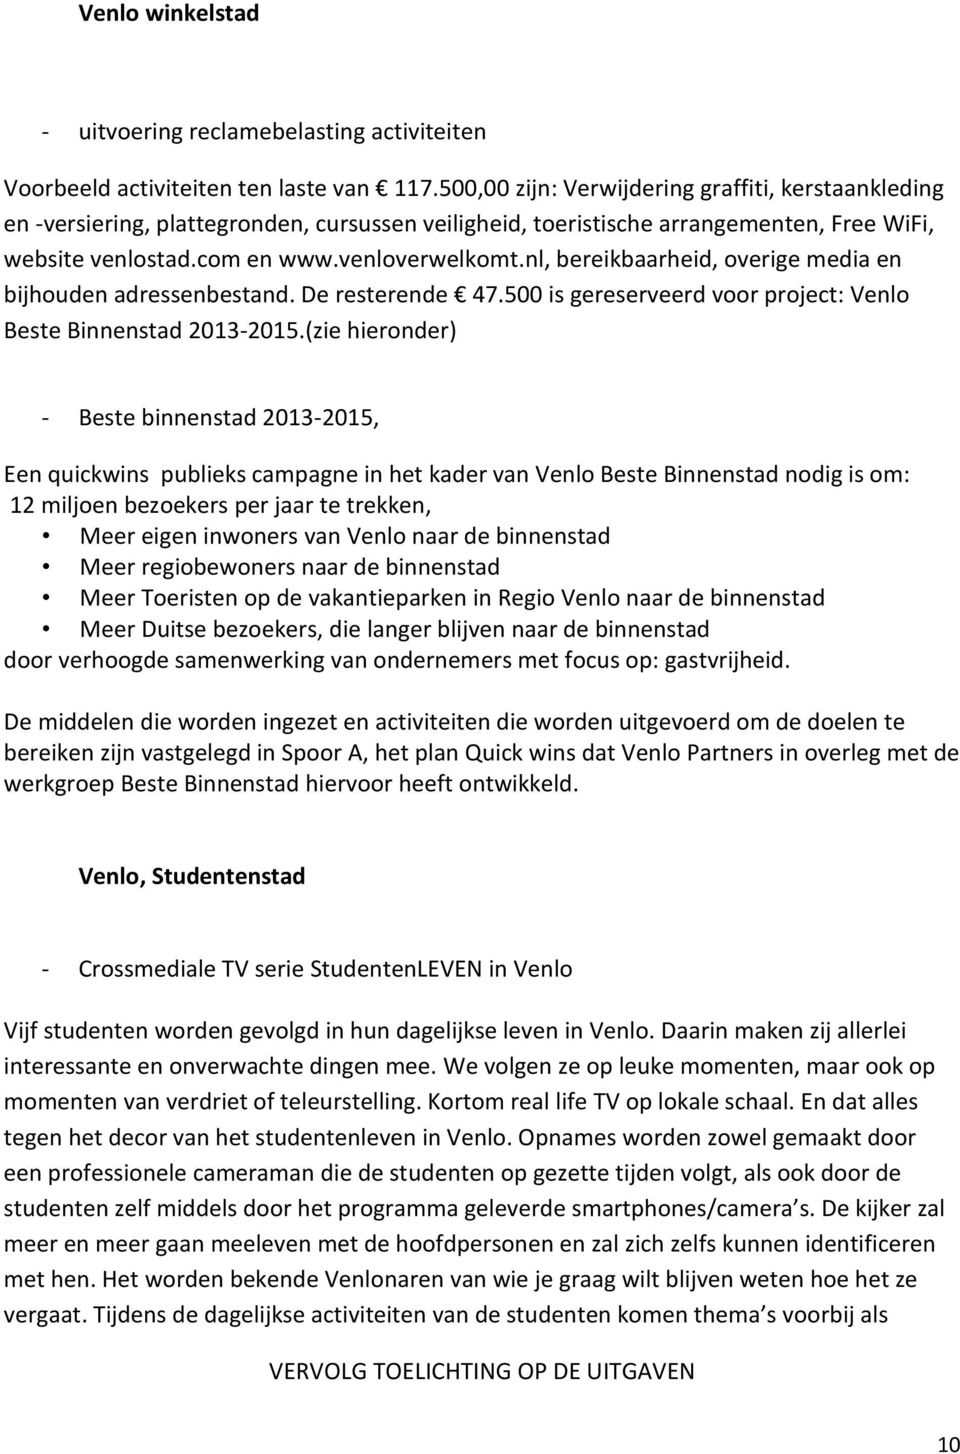 nl, bereikbaarheid, overige media en bijhouden adressenbestand. De resterende 47.500 is gereserveerd voor project: Venlo Beste Binnenstad 2013-2015.